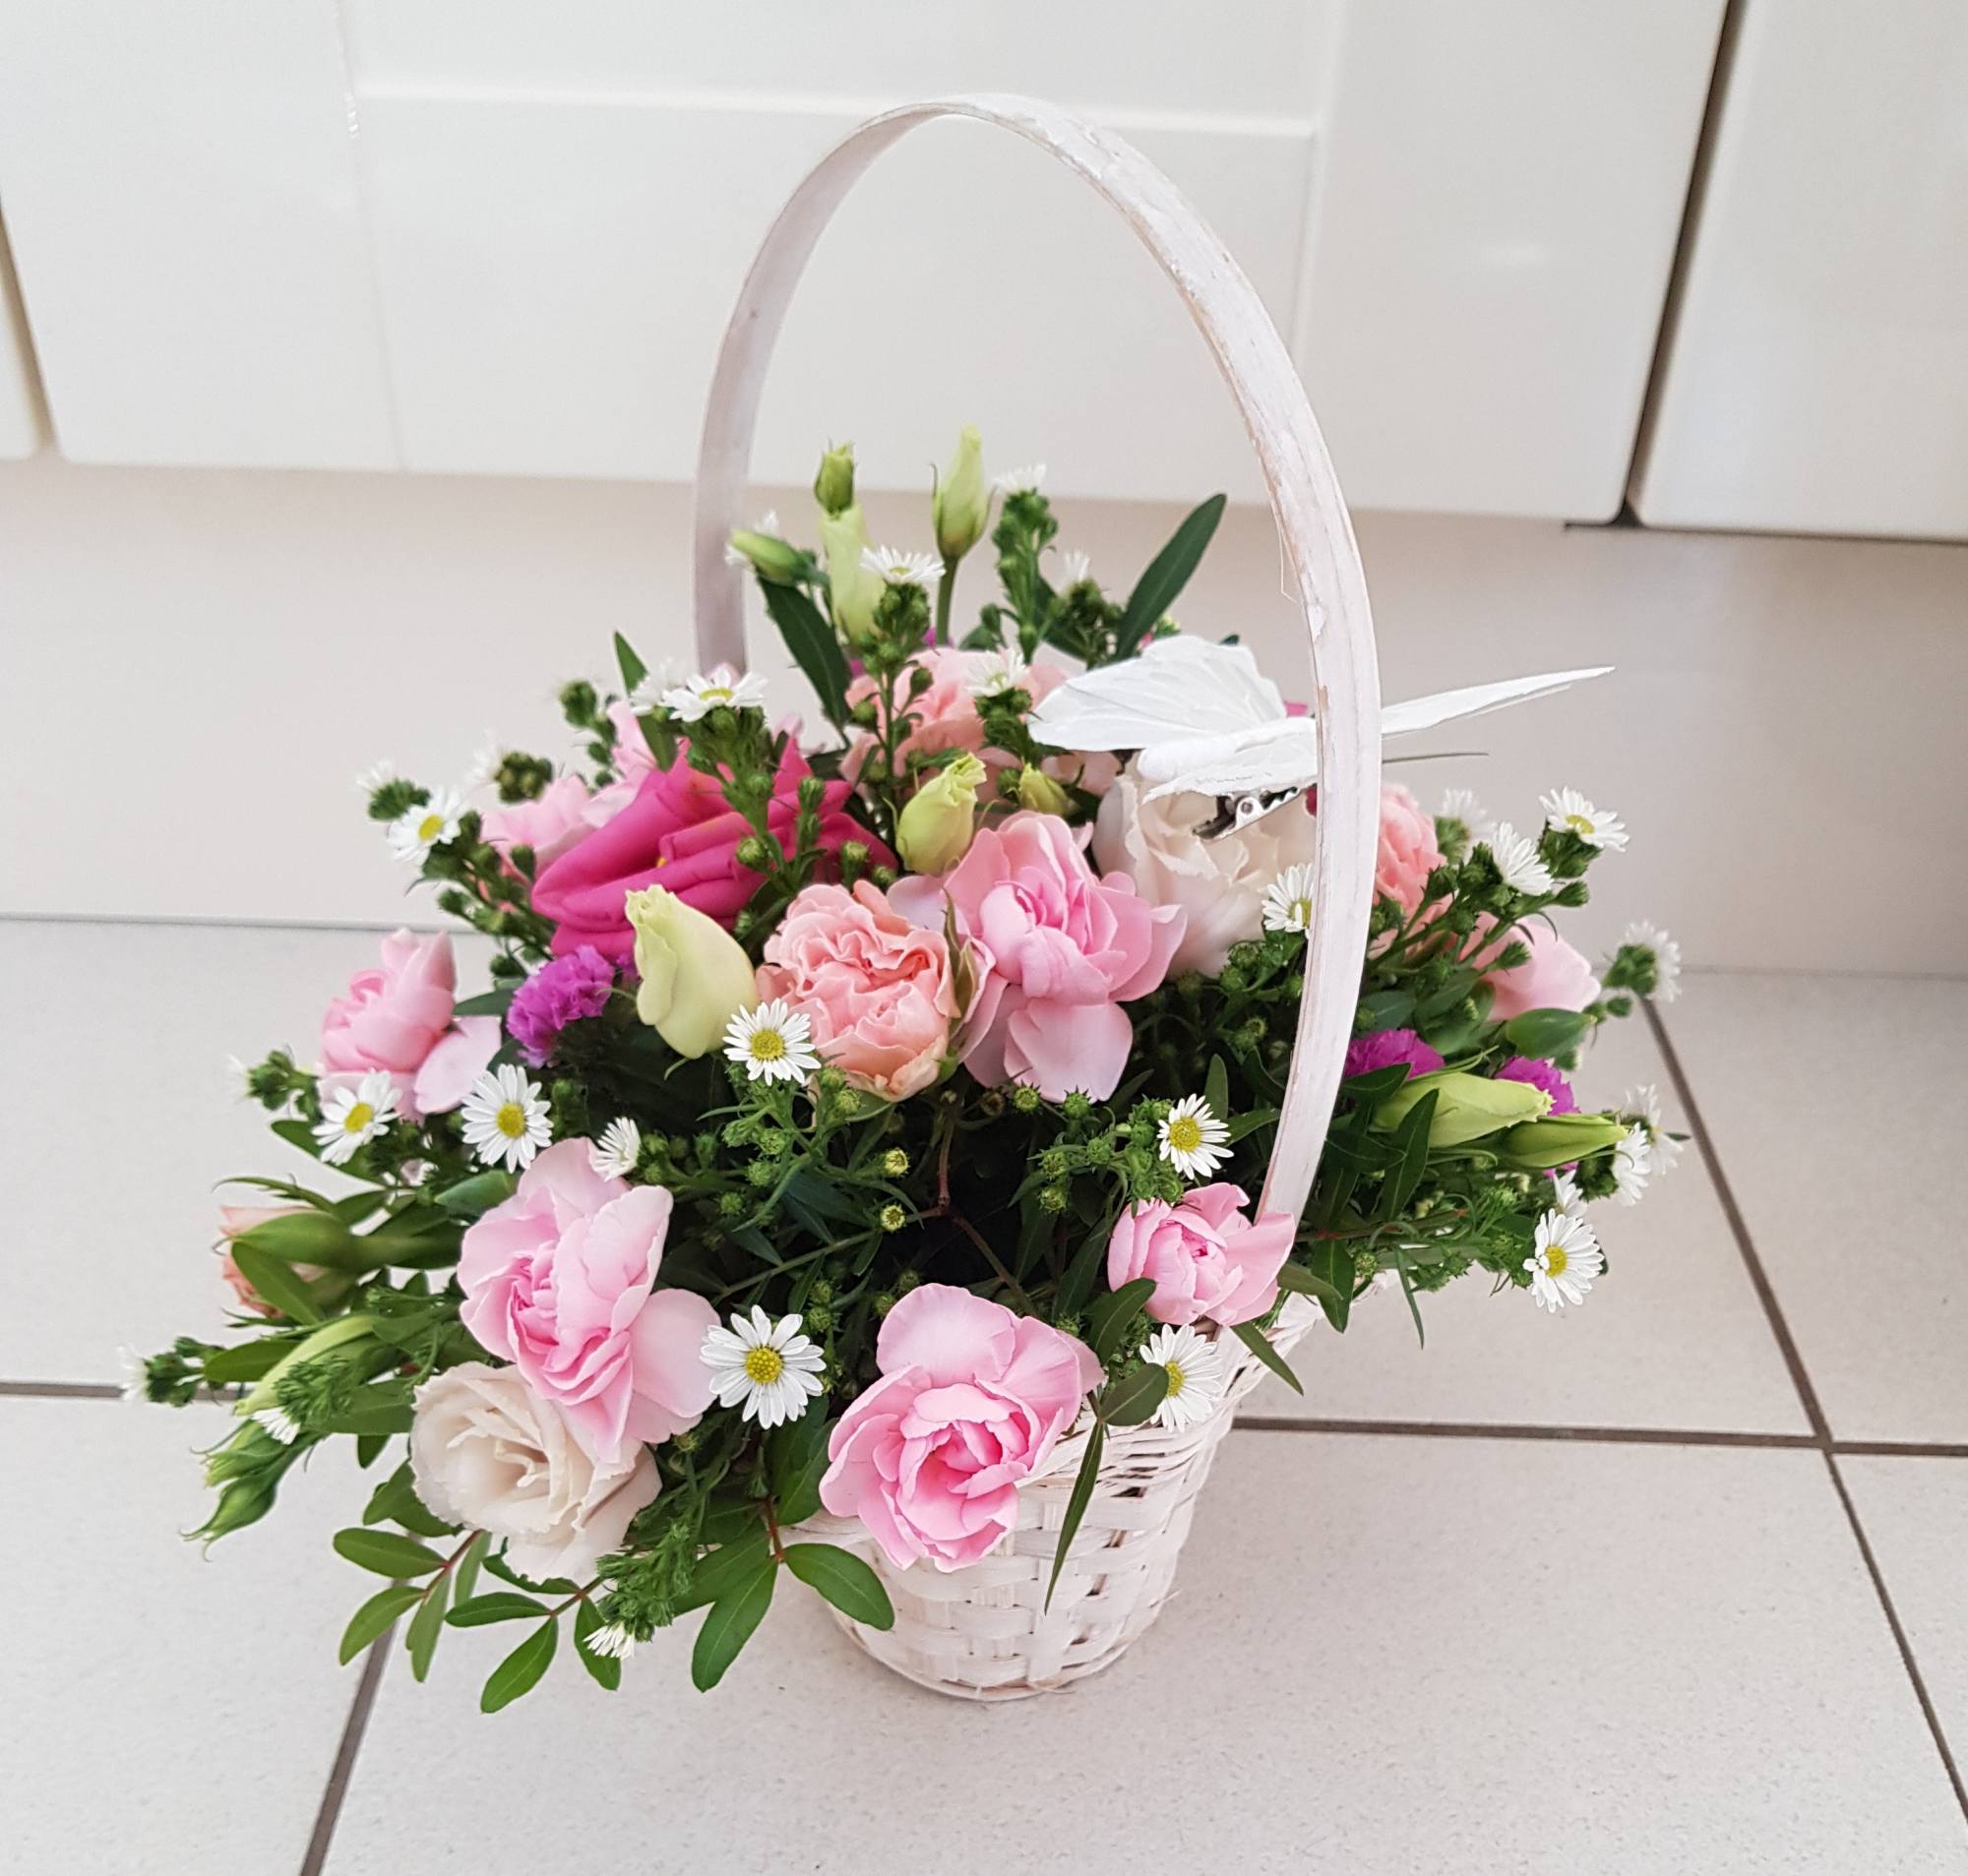 Flower Gift Basket #1 - The Flower Girls Bedford